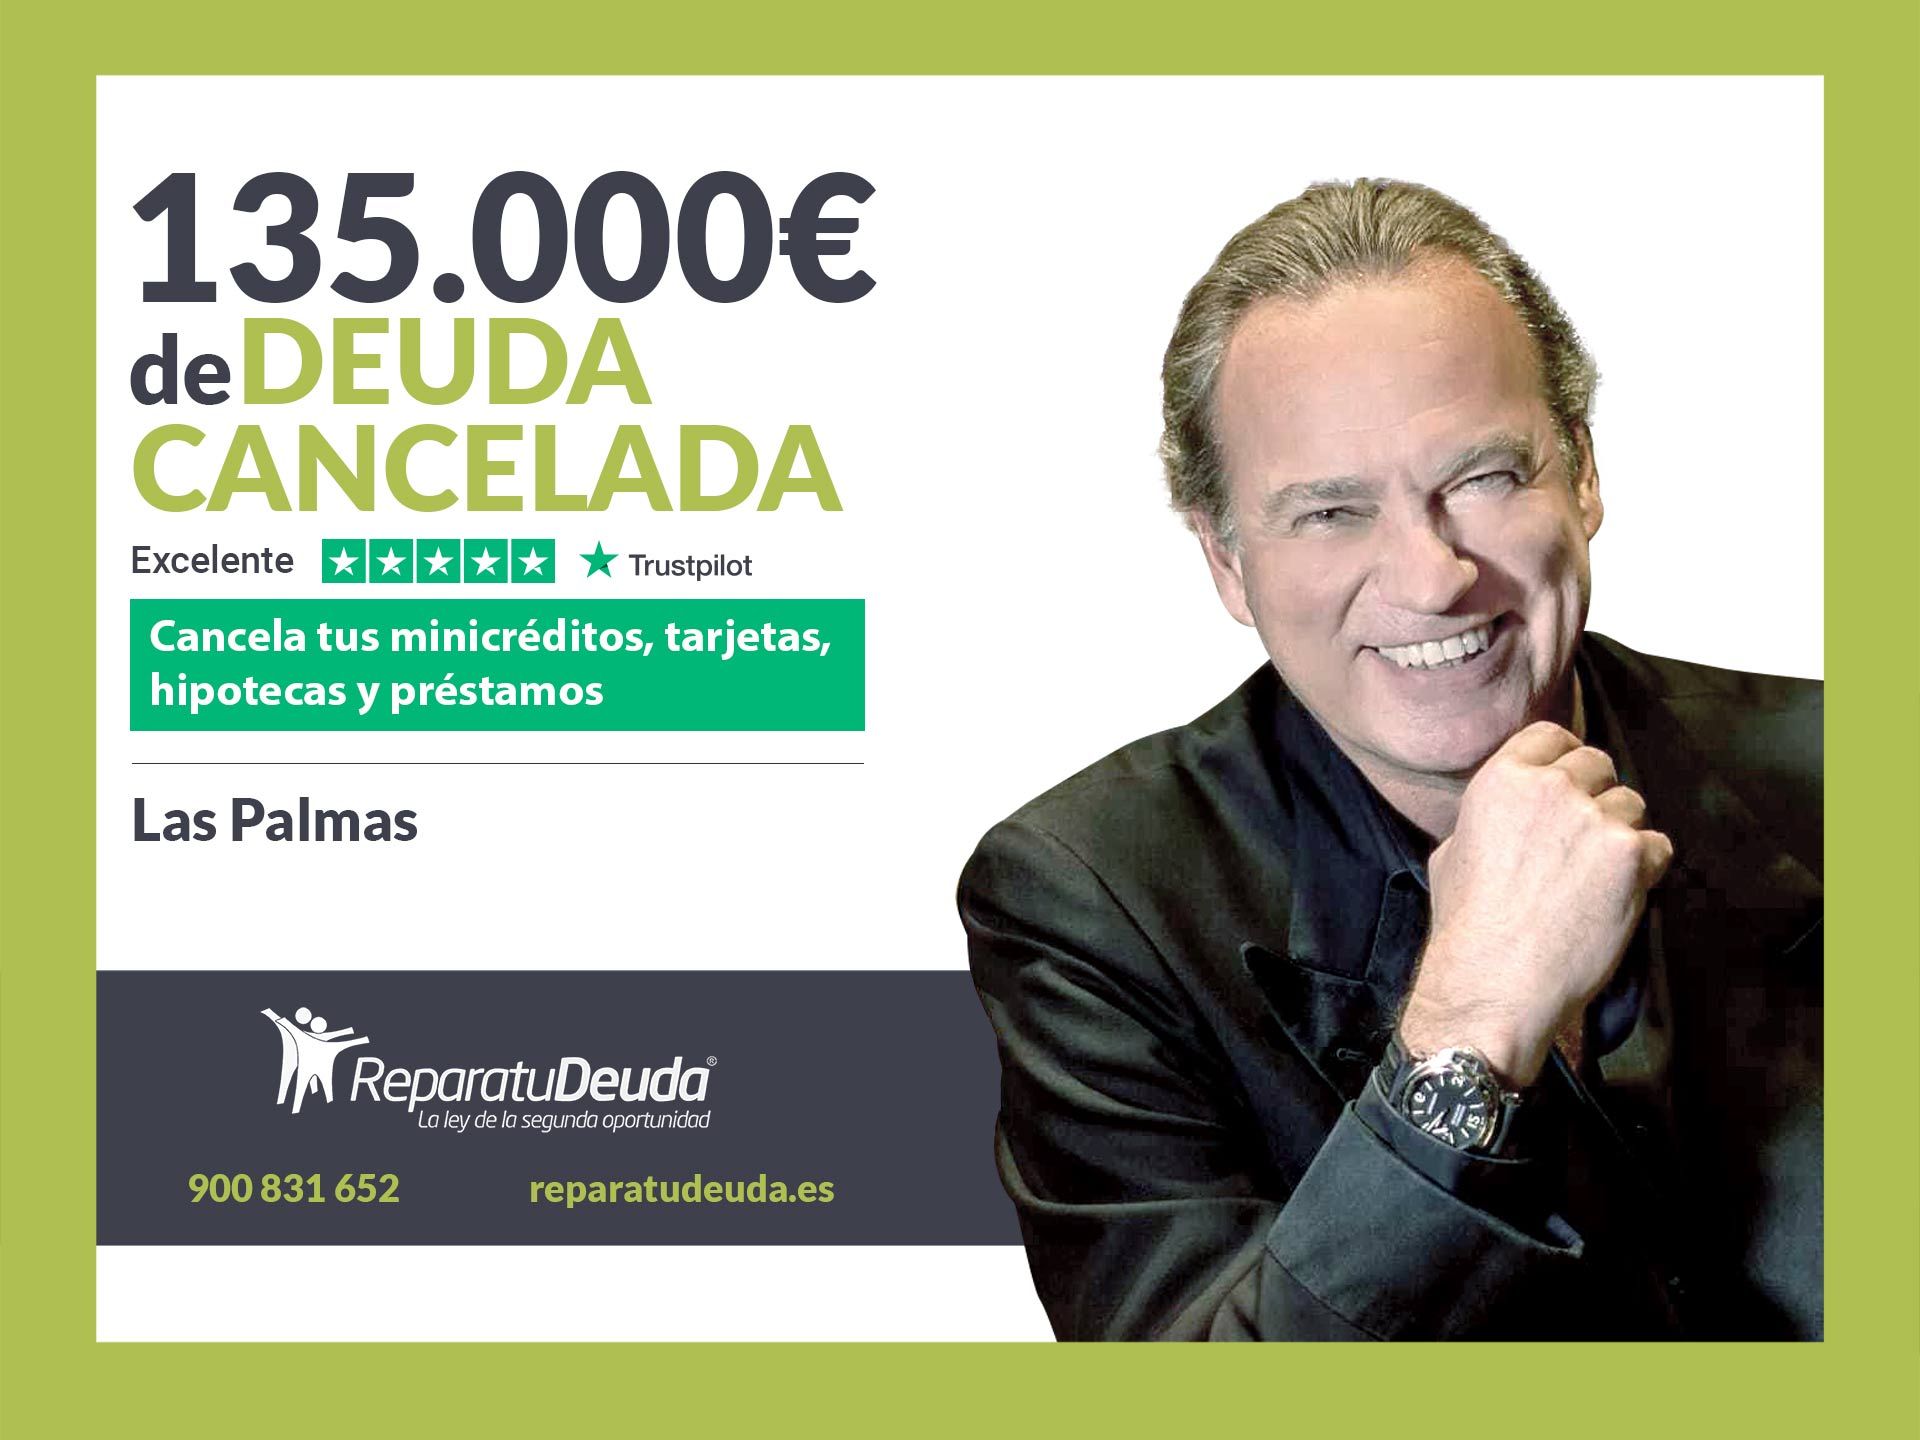 Repara tu Deuda Abogados cancela 135.000? en Las Palmas de Gran Canaria con la Ley de Segunda Oportunidad